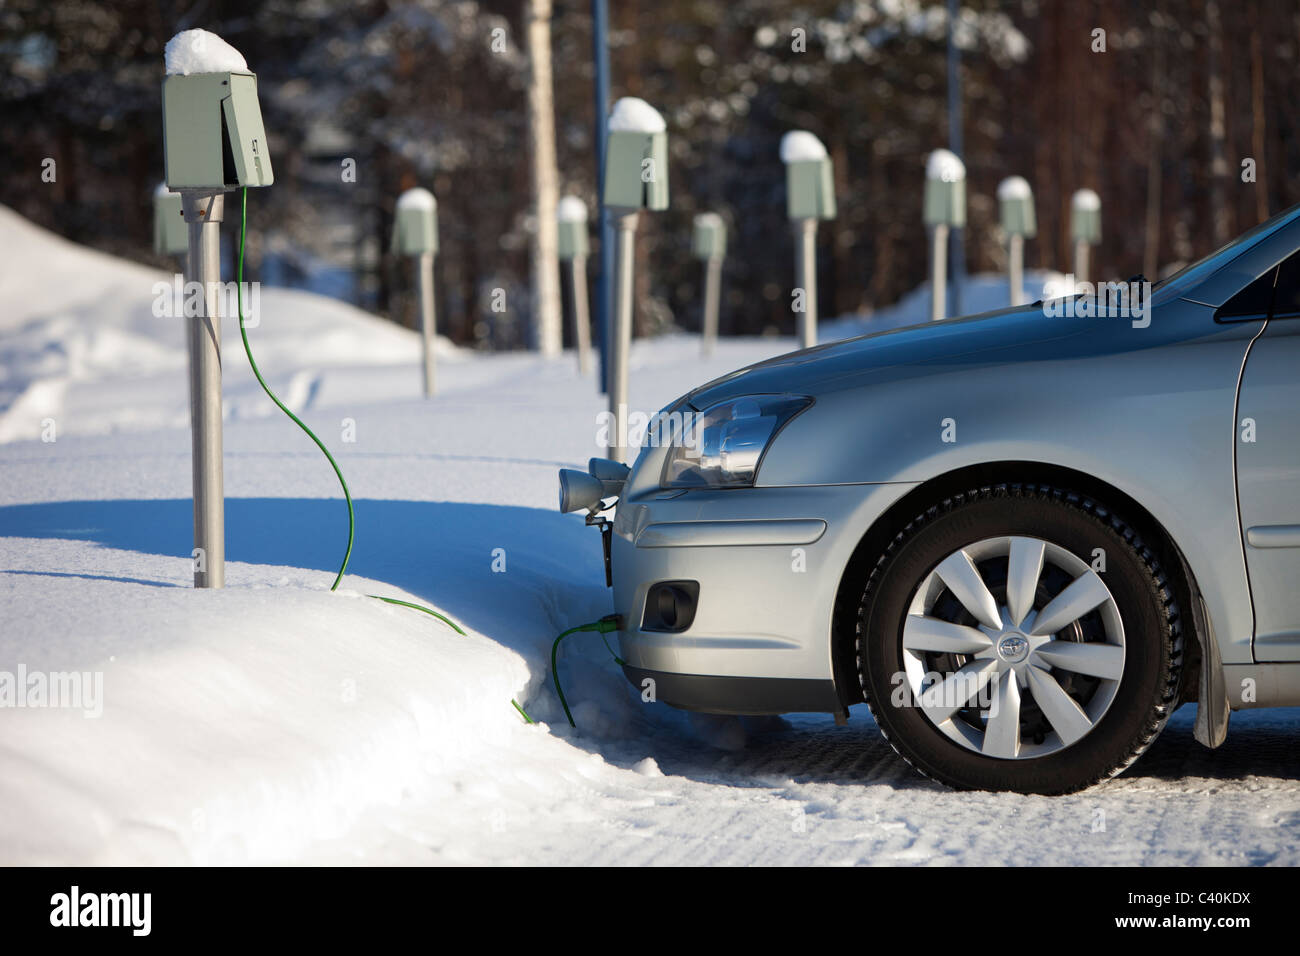 Steckdosen am finnischen Parkplatz. Wird verwendet, um Strom für  Motorheizungen im Winter, Finnland, zu liefern Stockfotografie - Alamy